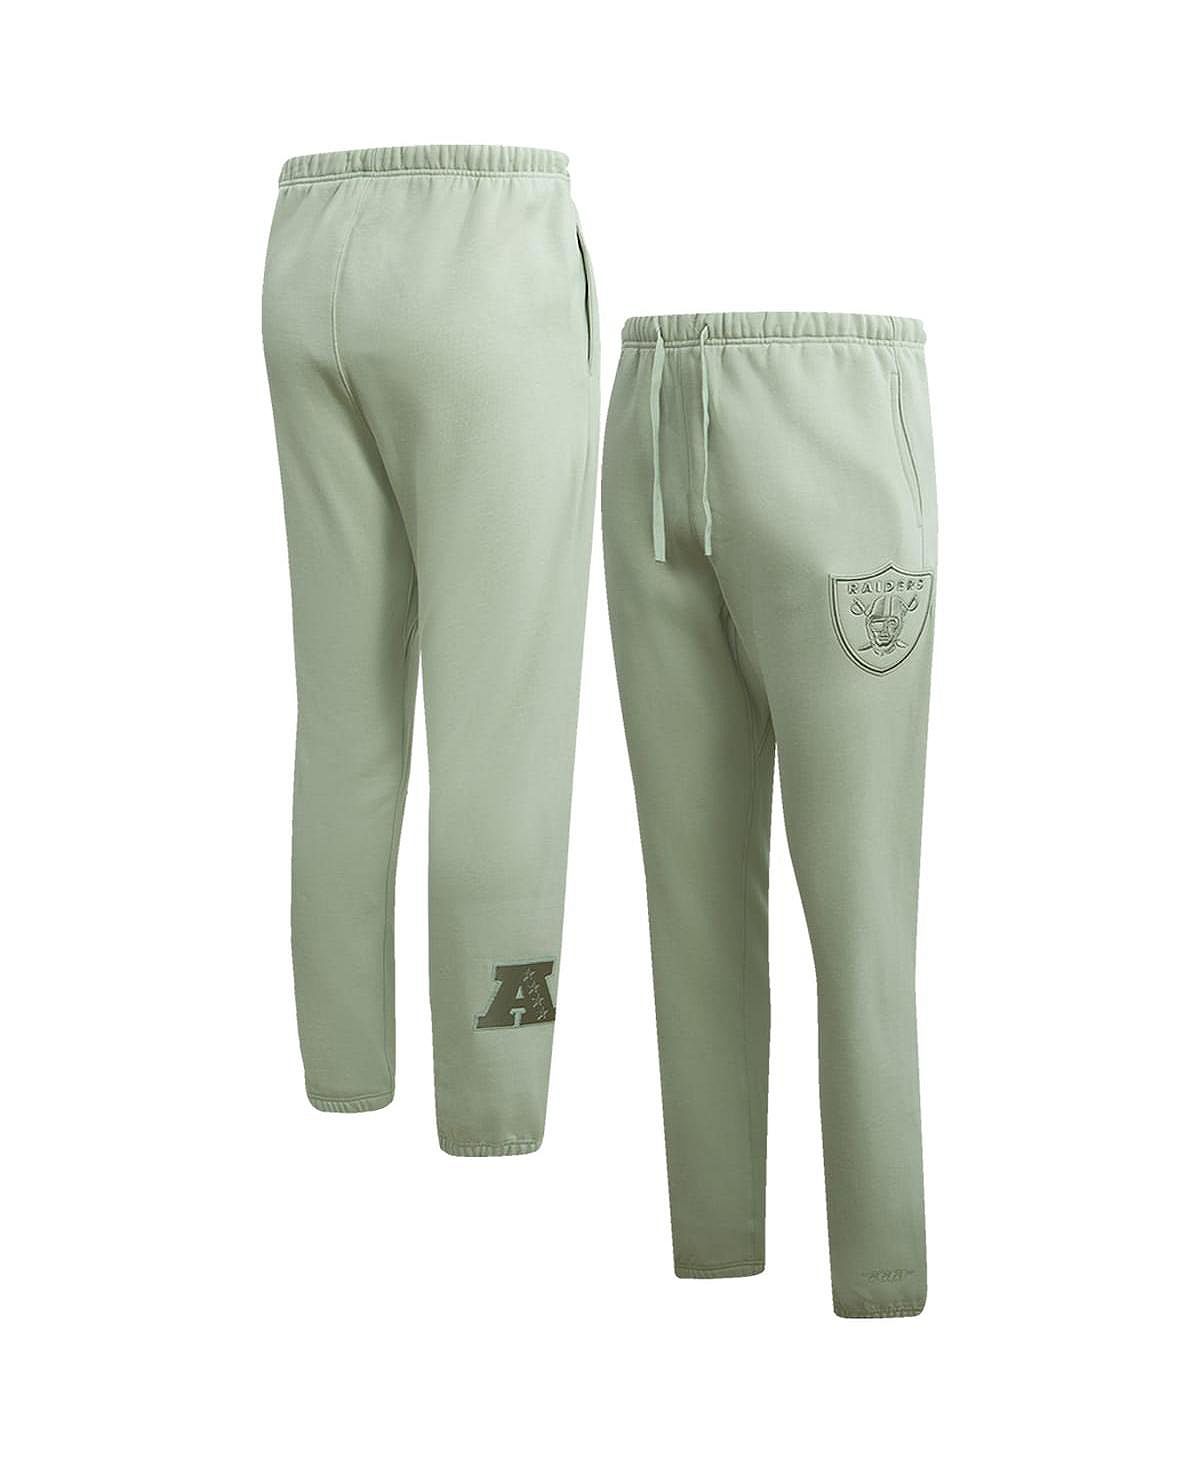 Мужские светло-зеленые флисовые спортивные штаны нейтрального цвета Las Vegas Raiders Pro Standard las vegas